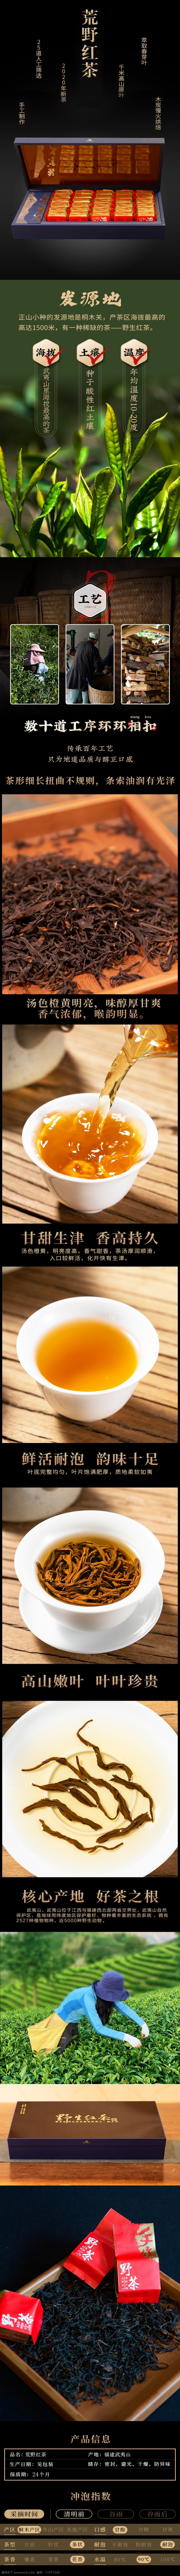 荒野 红茶 详情 页 荒野红茶 茶叶 详情页 中国风 古典 共享图 淘宝界面设计